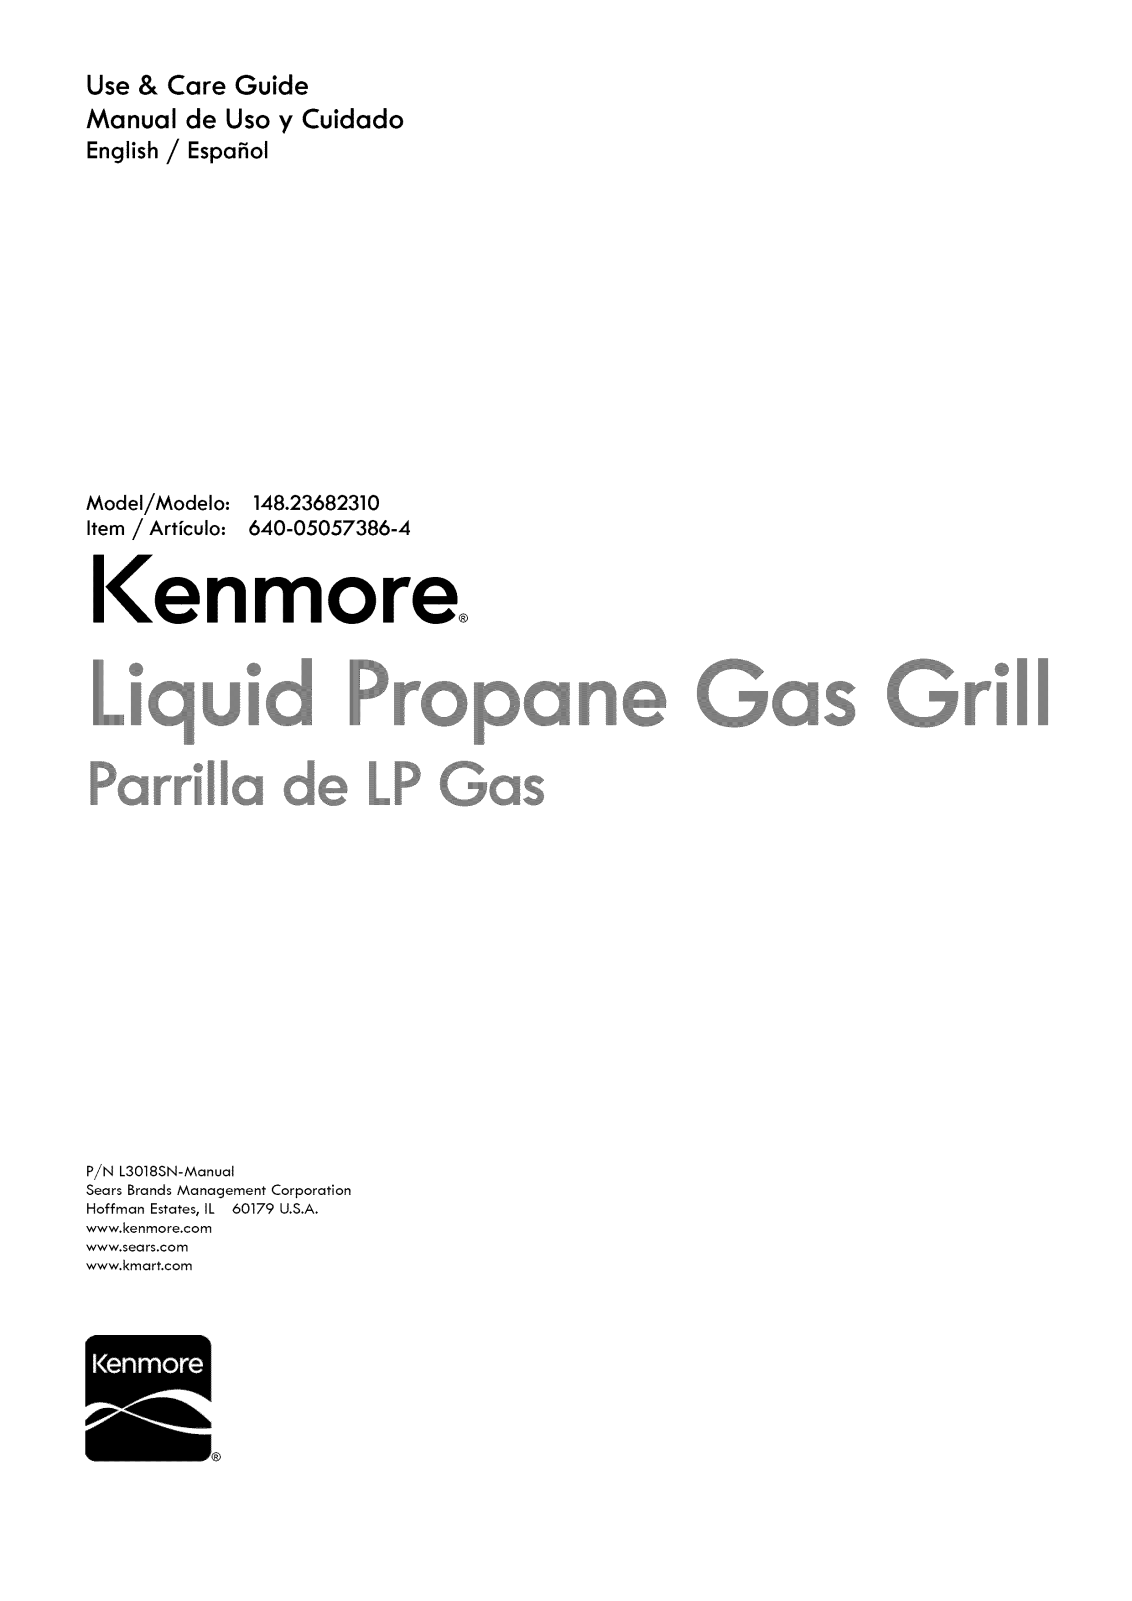 Kenmore 640-05057386-4, 14823682310 Owner’s Manual